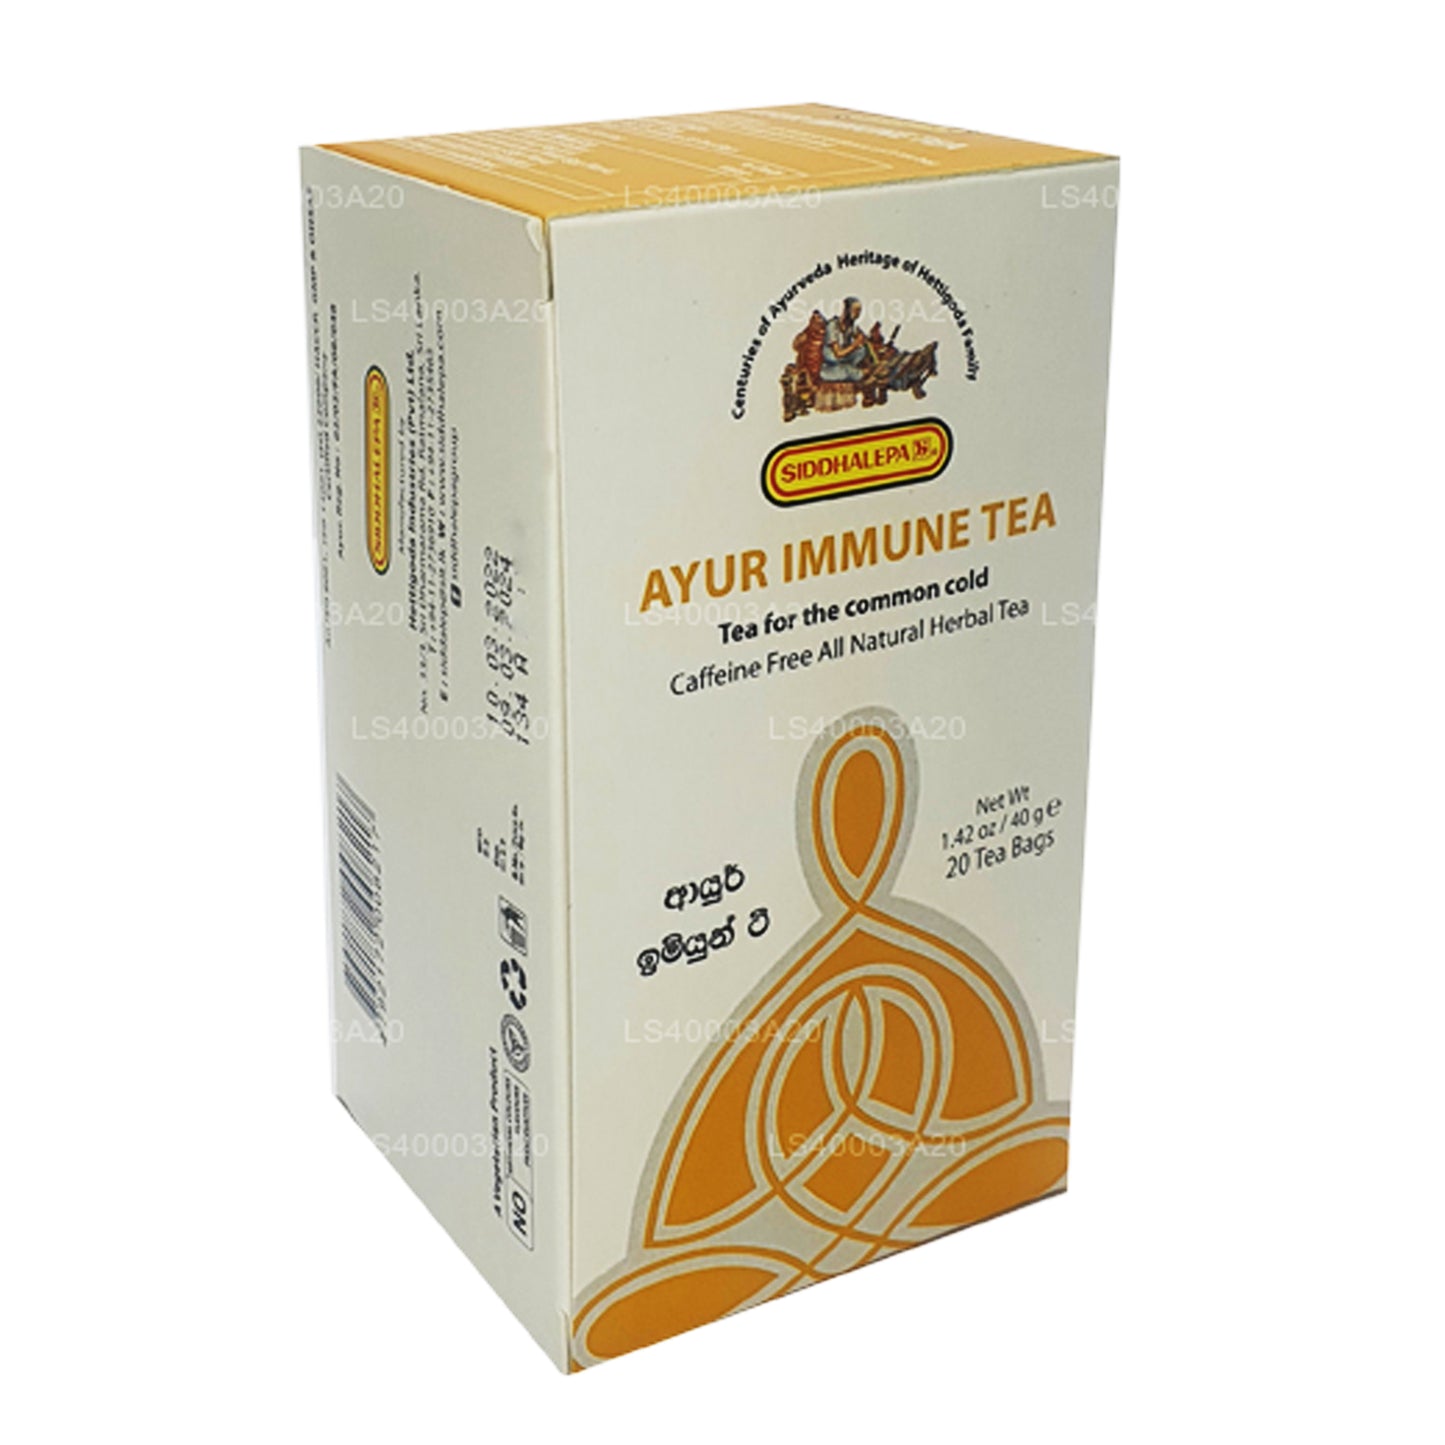 Siddhalepa Ayur 免疫茶 (40 g)